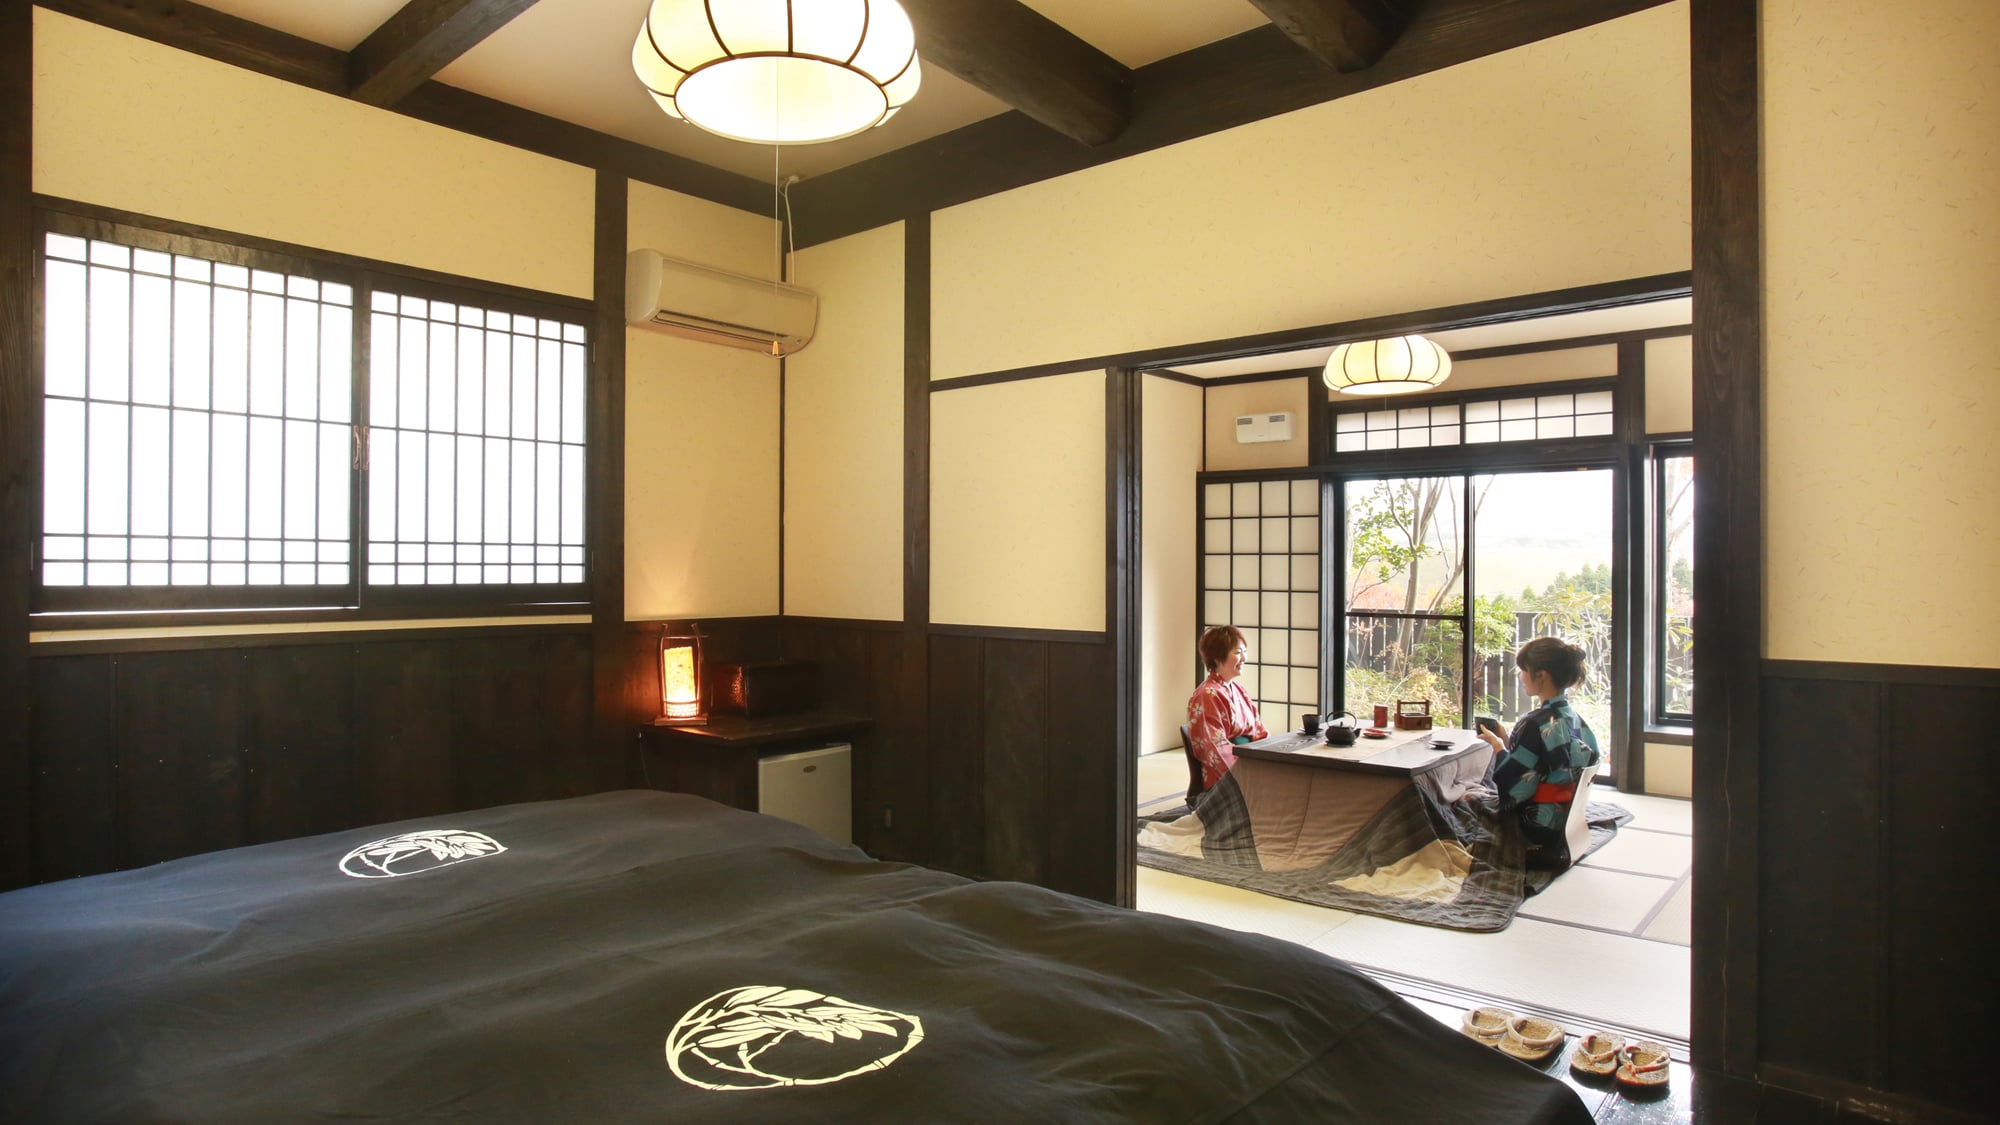 （冬季被爐）帶露天浴池【日西合璧式房間】日式房間約11張榻榻米+西式房間約10張榻榻米【清和】